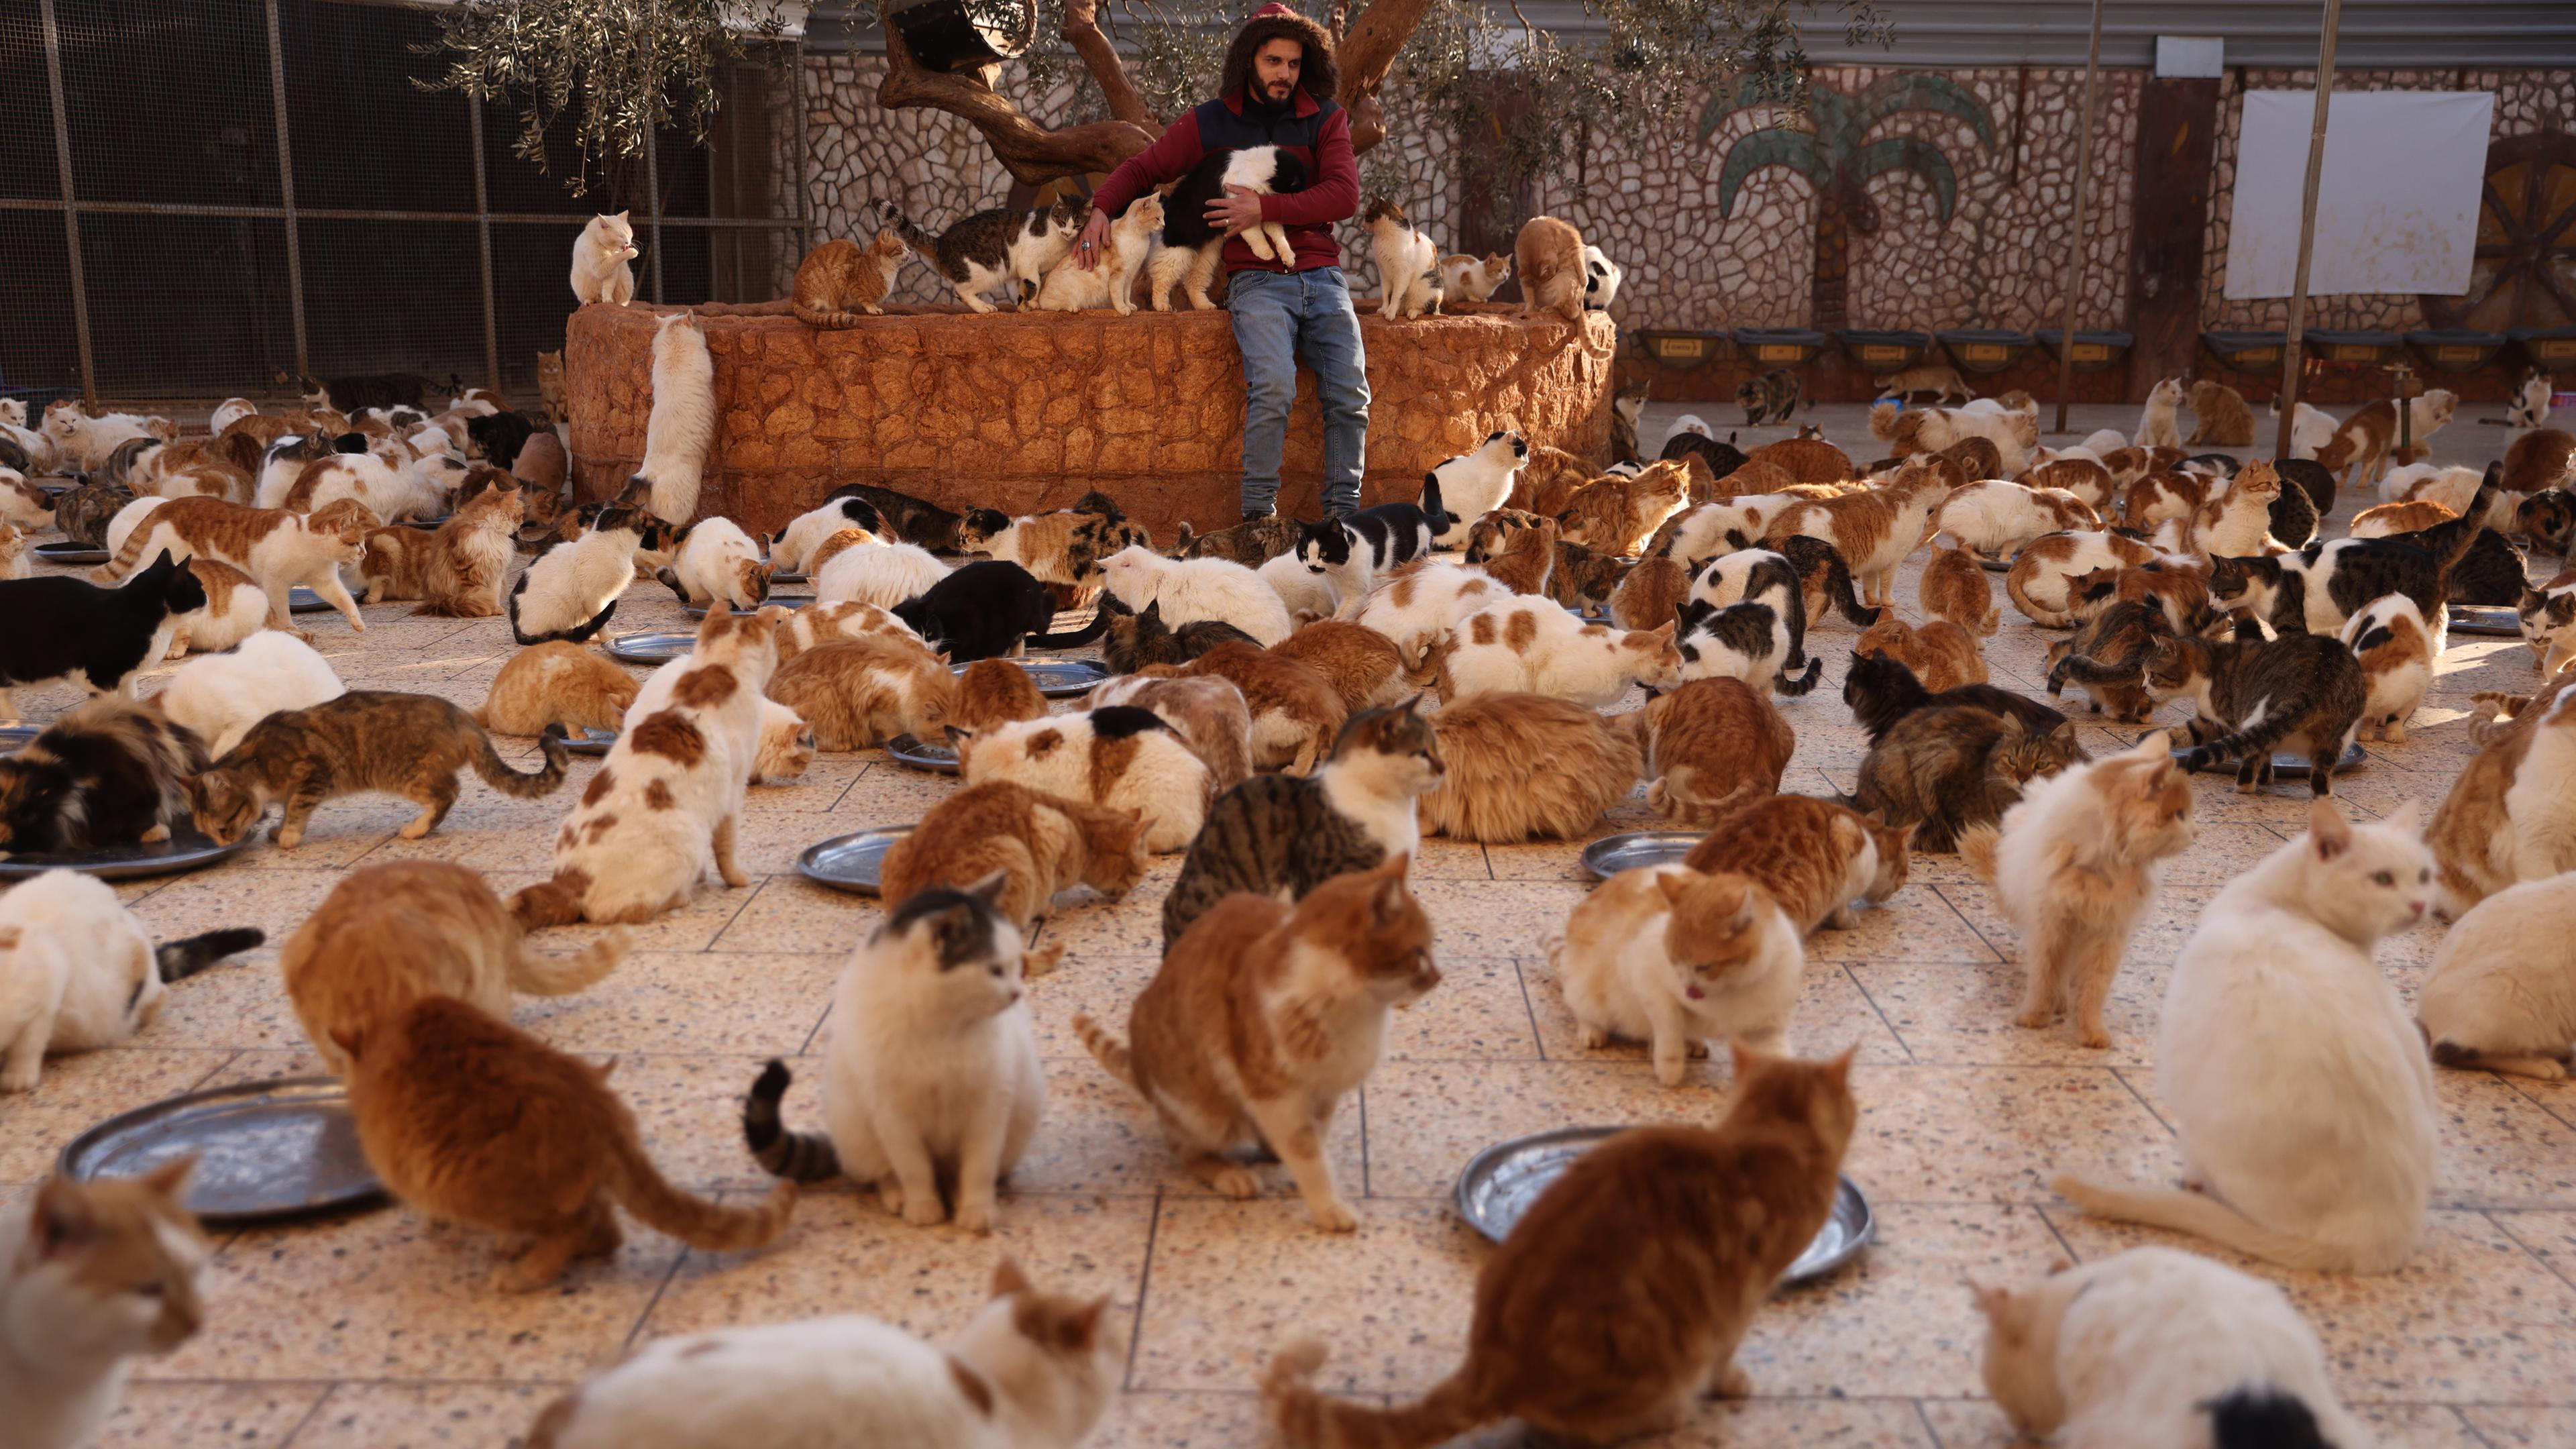 Syrien, Idlib: Ein Mitarbeiter von Ernestos Cat Sanctutary spielt mit einigen der rund 2000 Katzen, die die Organisation in Idlib beherbergt.